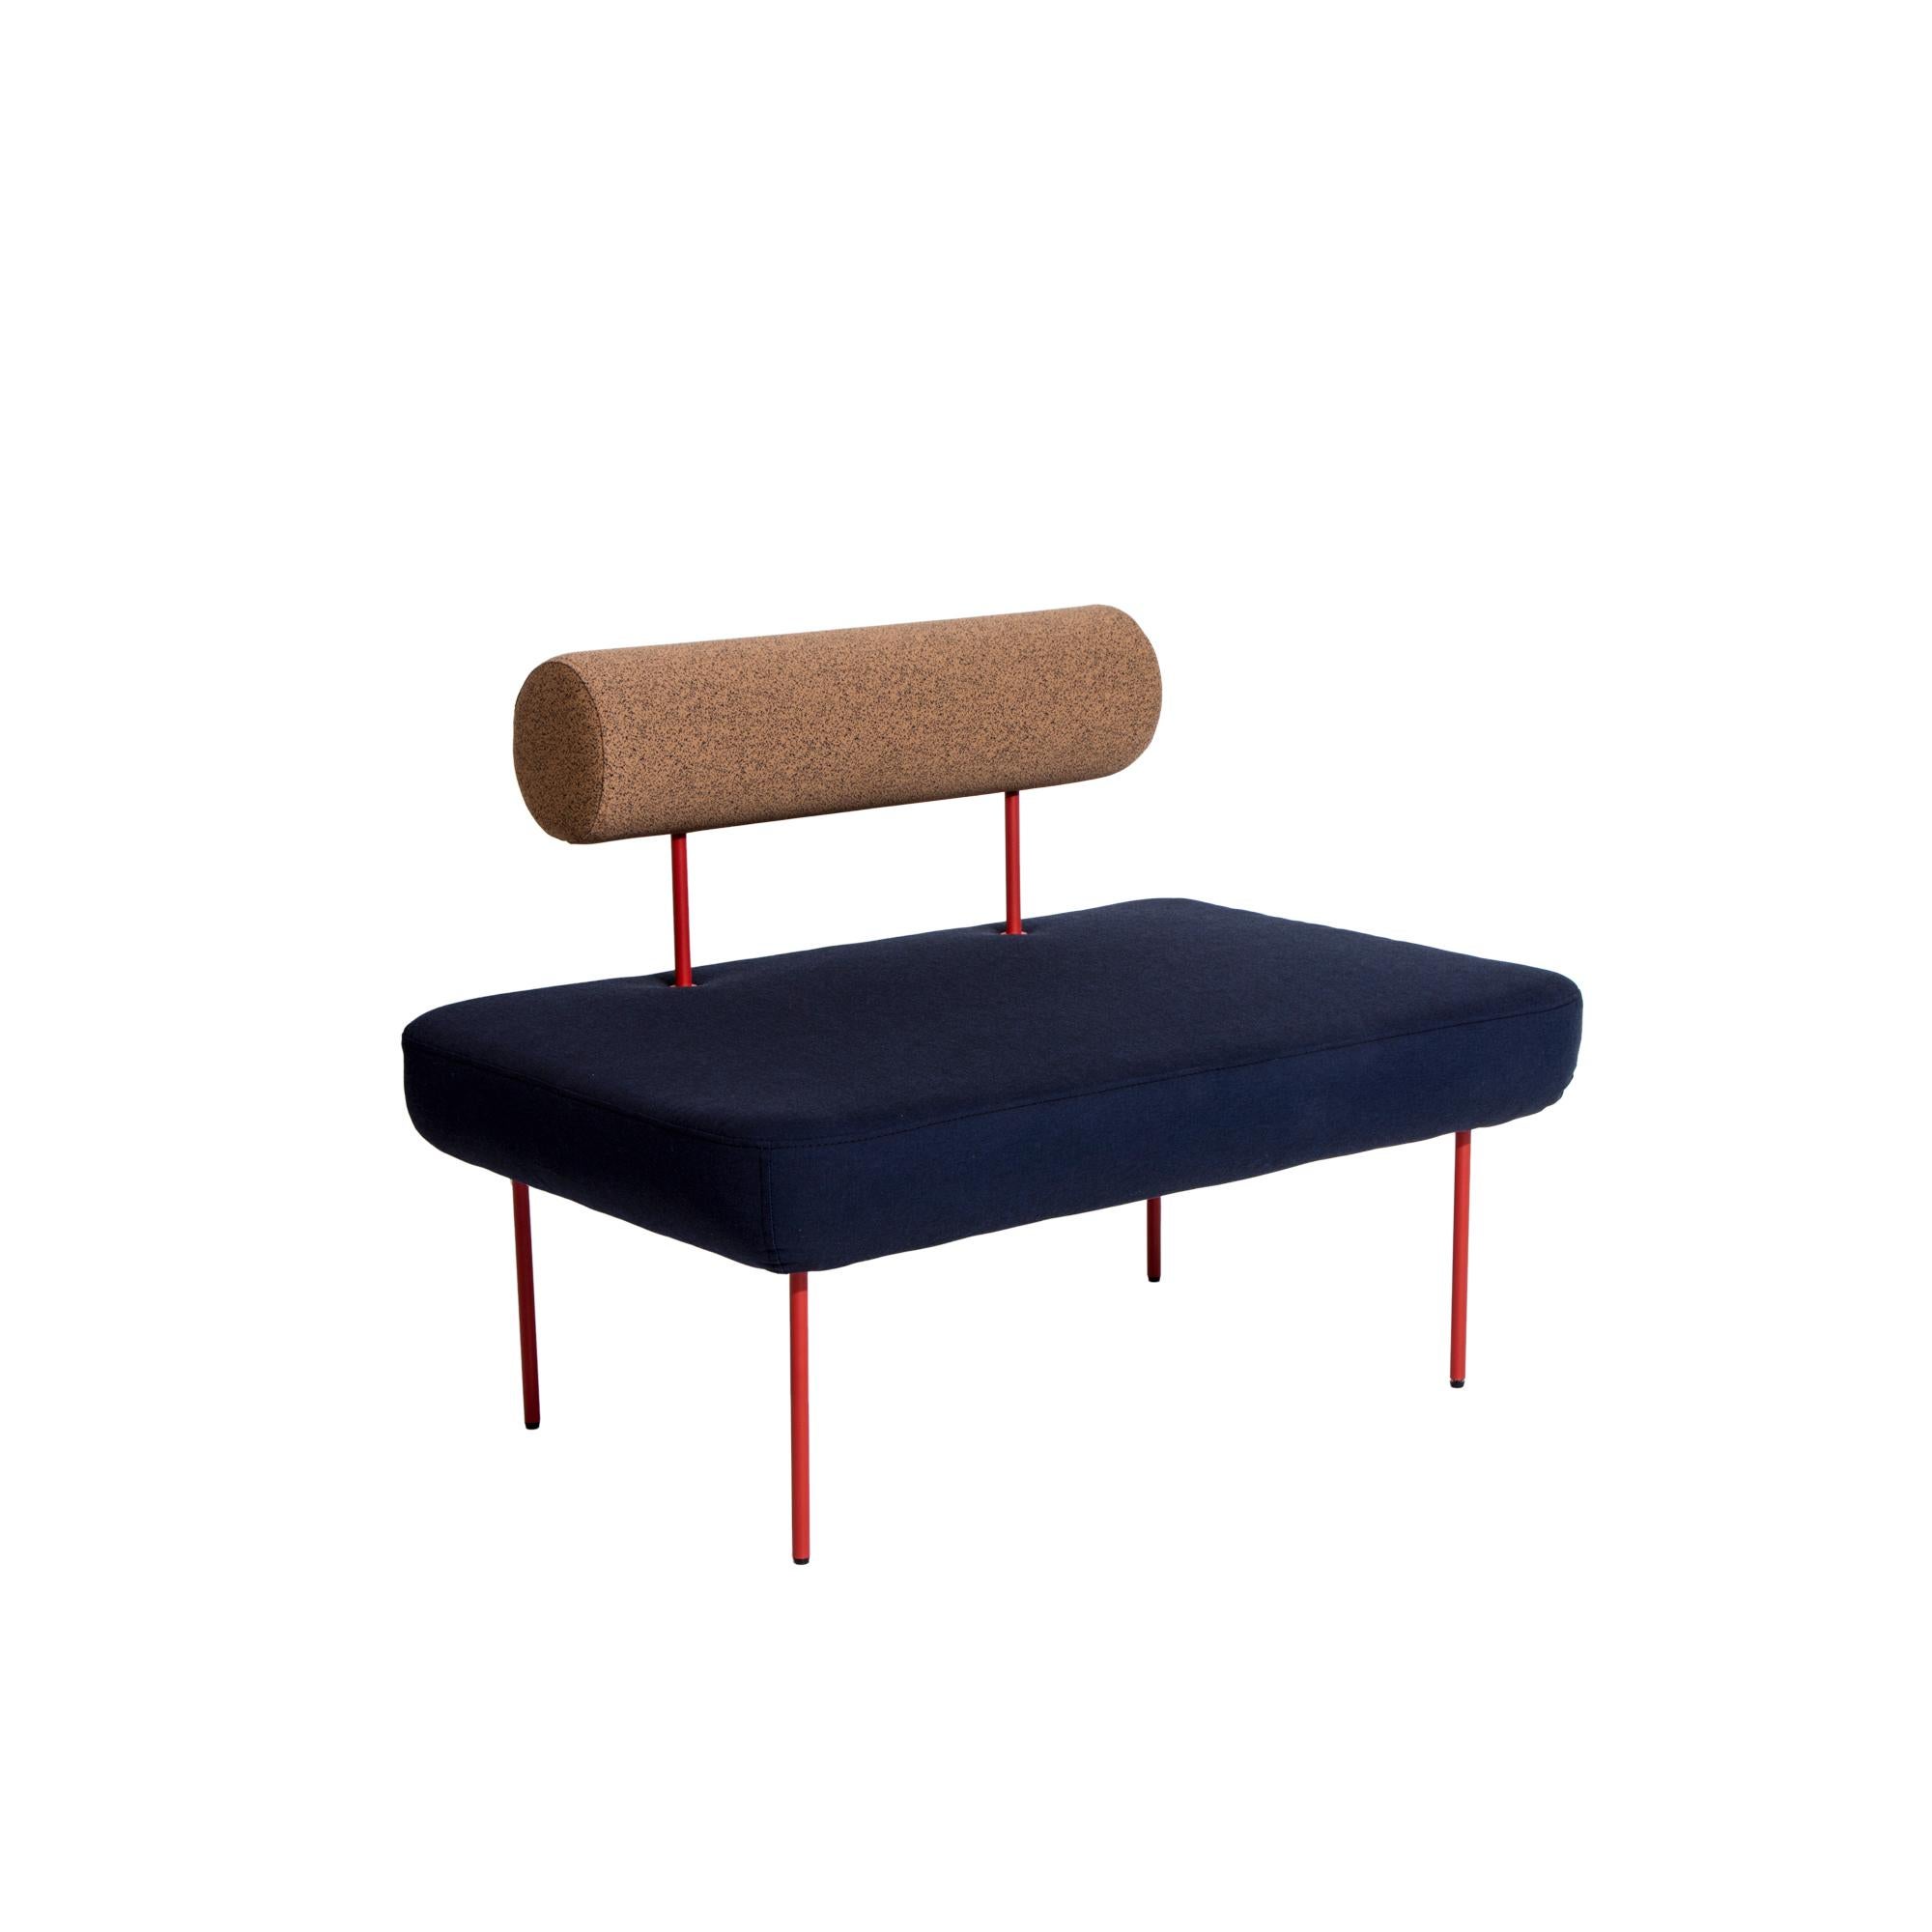 Petite Friture Large Hoff Armchair in Blue and Brown by Morten & Jonas, 2015

Hoff, créée par le duo de designers Morten & Jonas, est une collection de deux tabourets et de deux fauteuils modulaires. Ils peuvent être combinés pour former un canapé